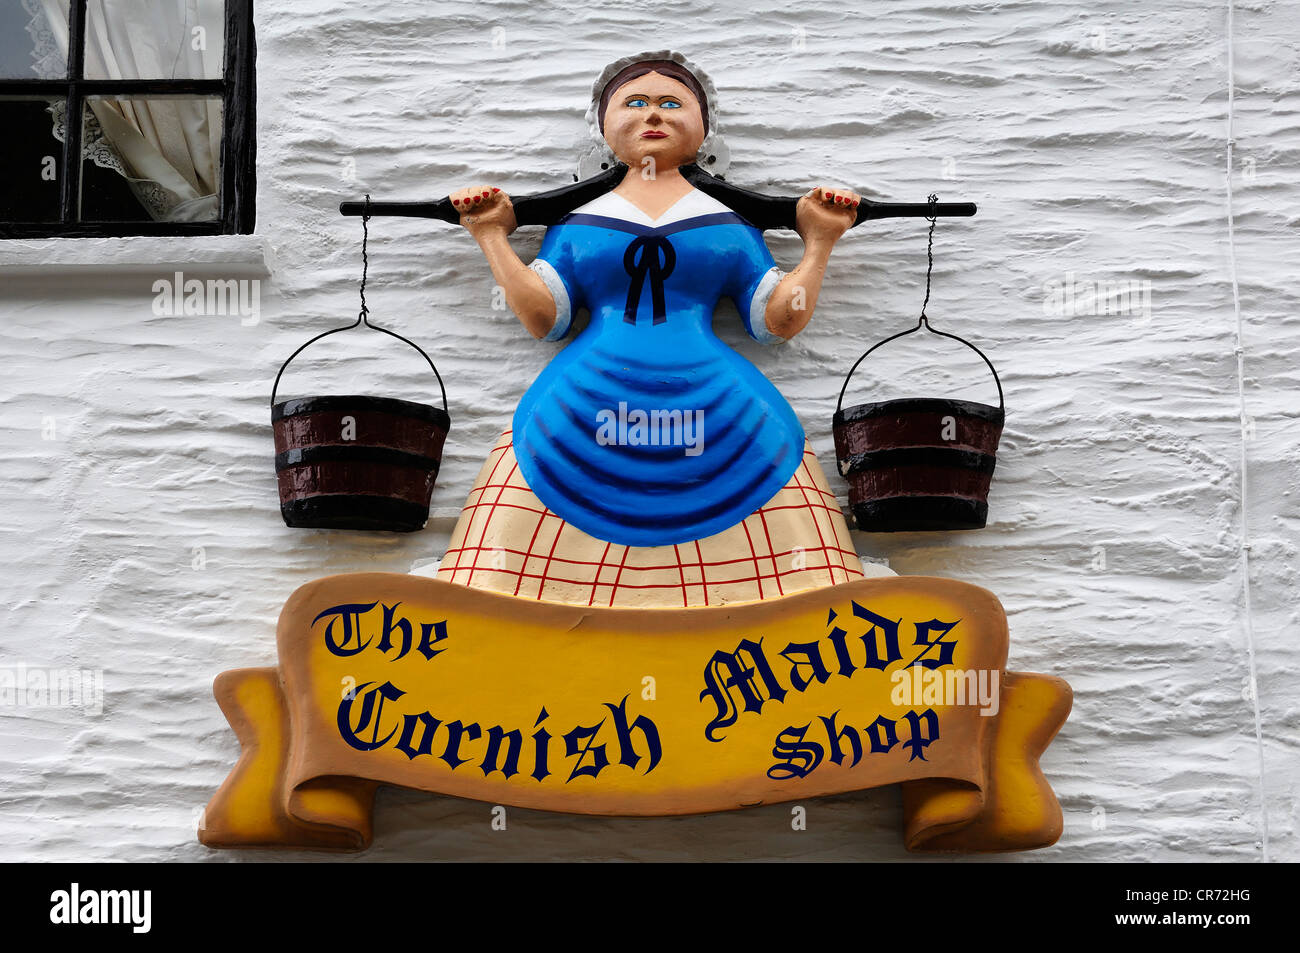 Caractère de publicité au-dessus d'un magasin de bonbons, Fudgeshop, La Femme de Cornouailles Polperro, boutique, Cornwall, Angleterre, Royaume-Uni Banque D'Images